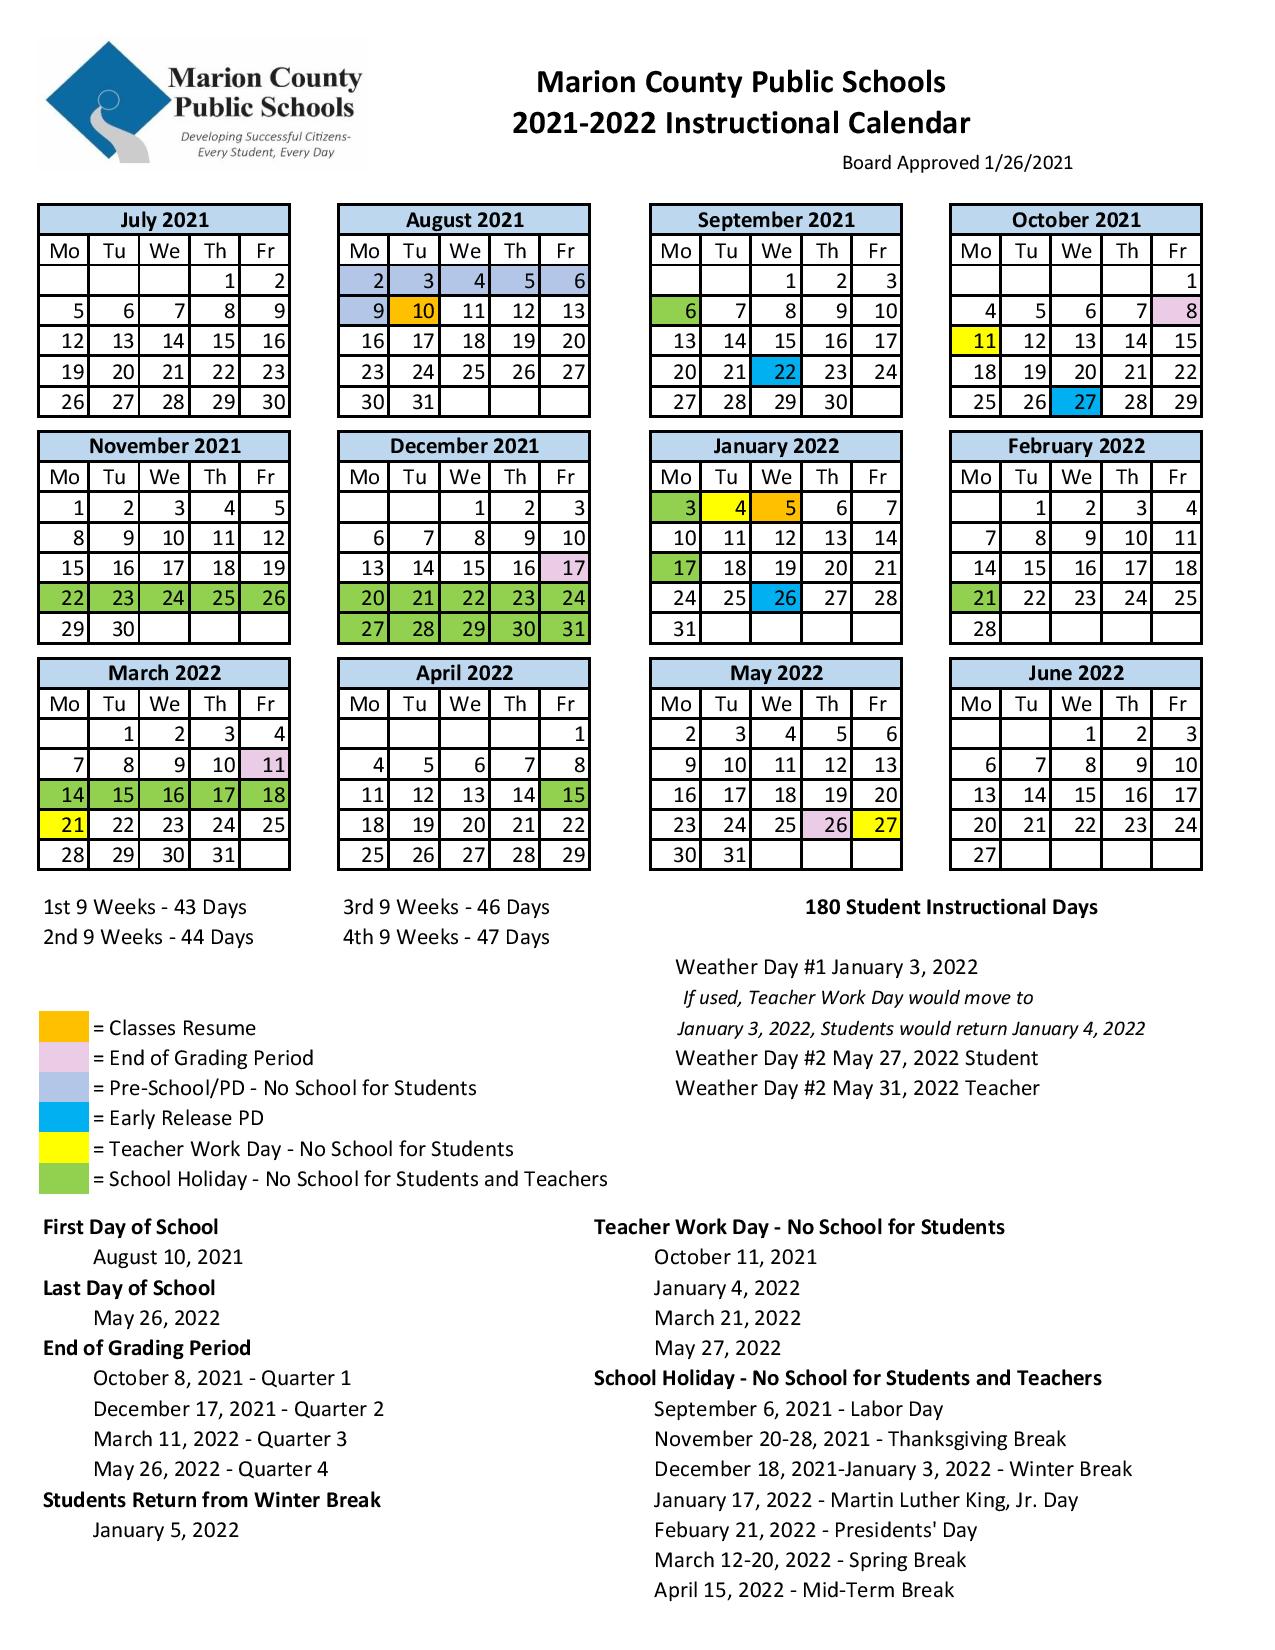 Marion County Public Schools Calendar 2021 2022